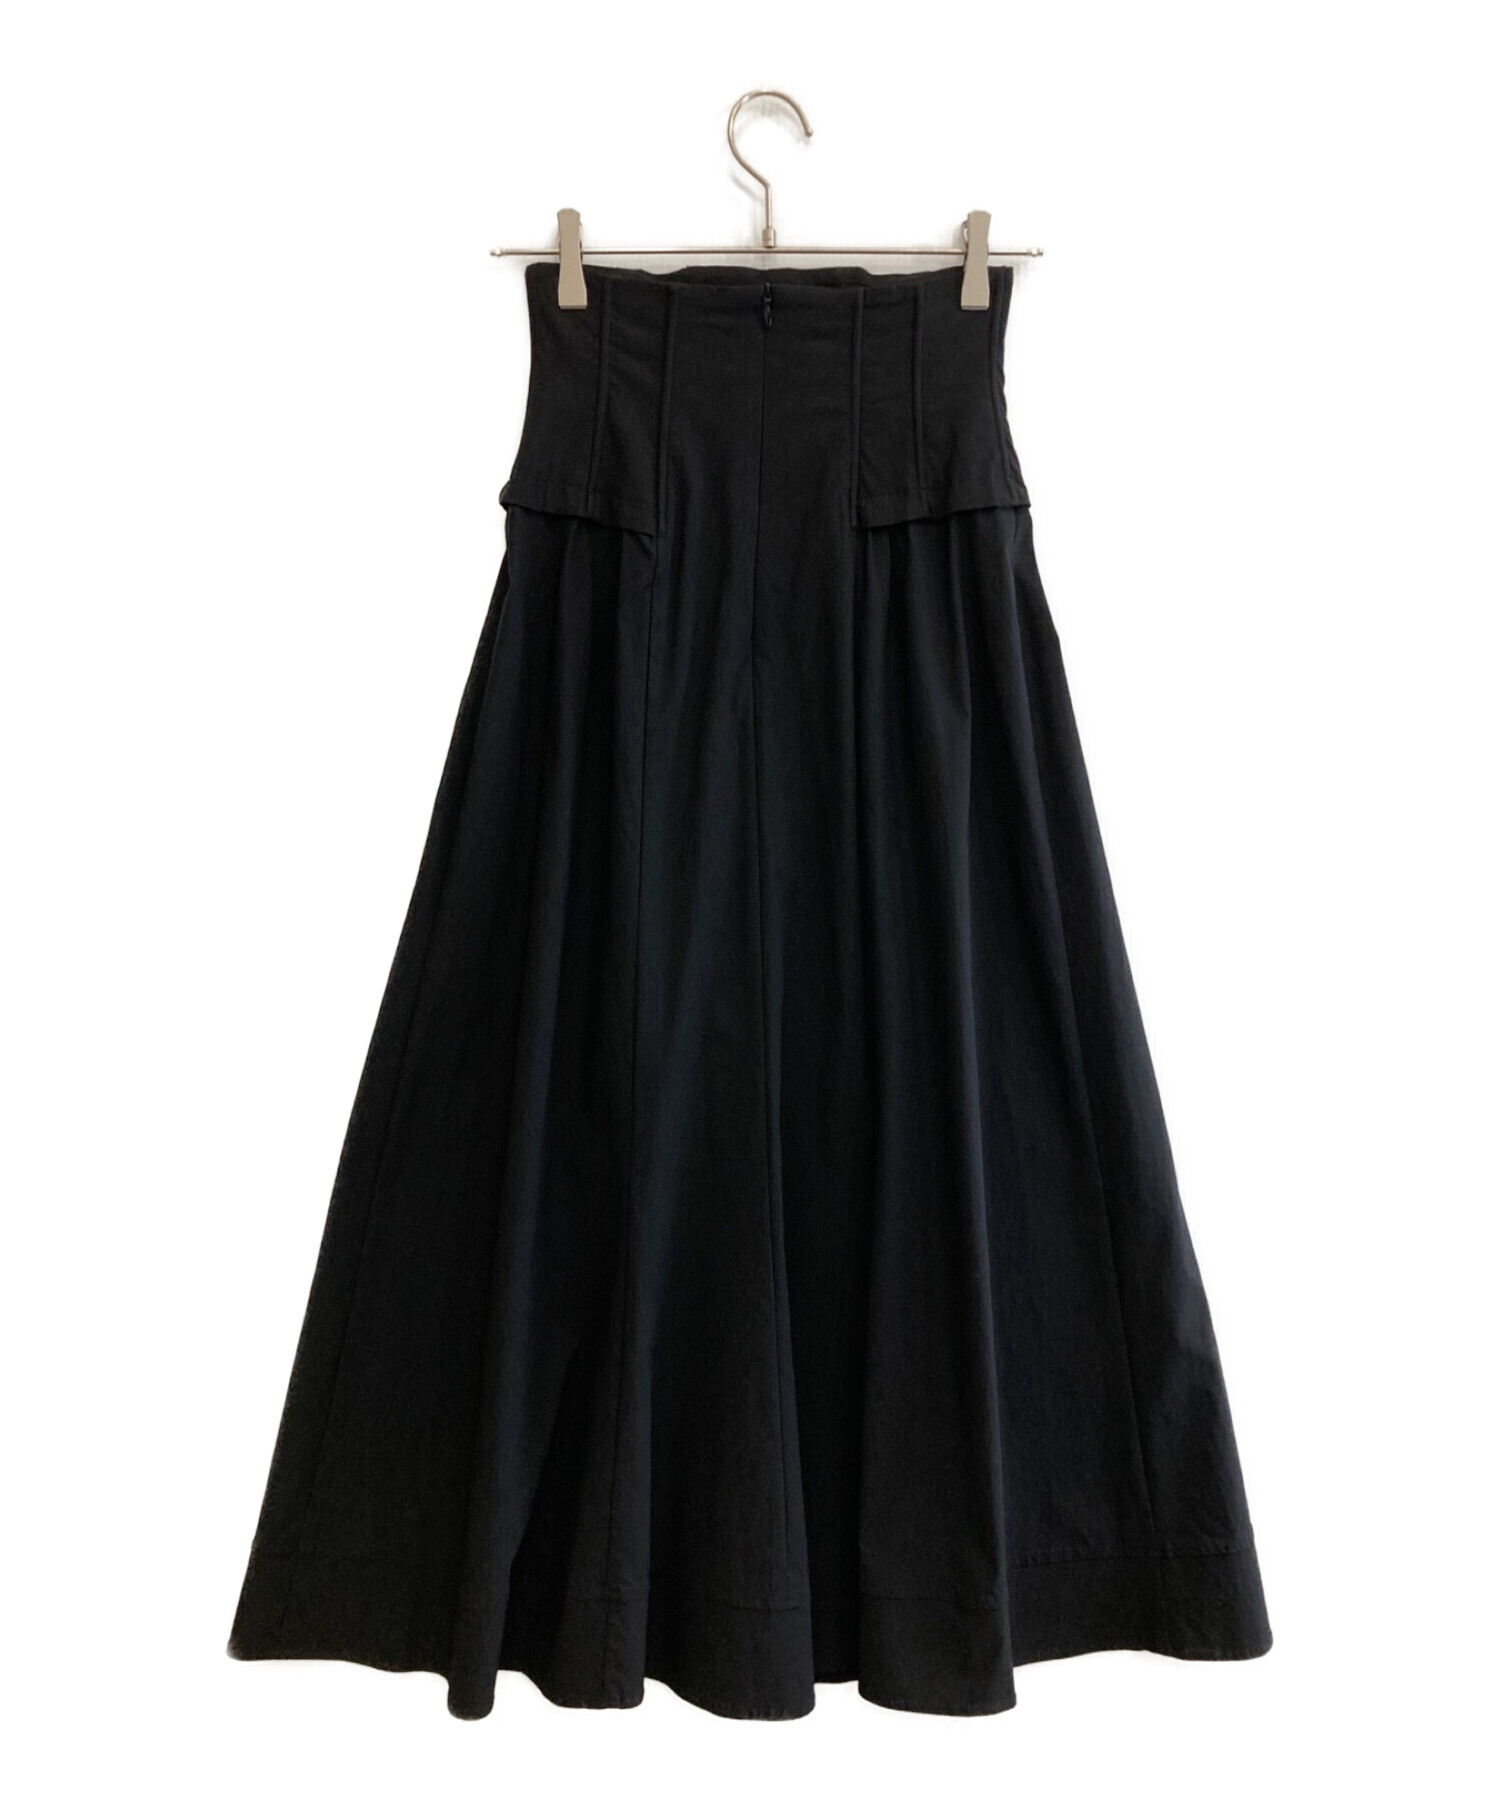 COCODEAL (ココディール) コルセットストレッチボリュームスカート ブラック サイズ:1